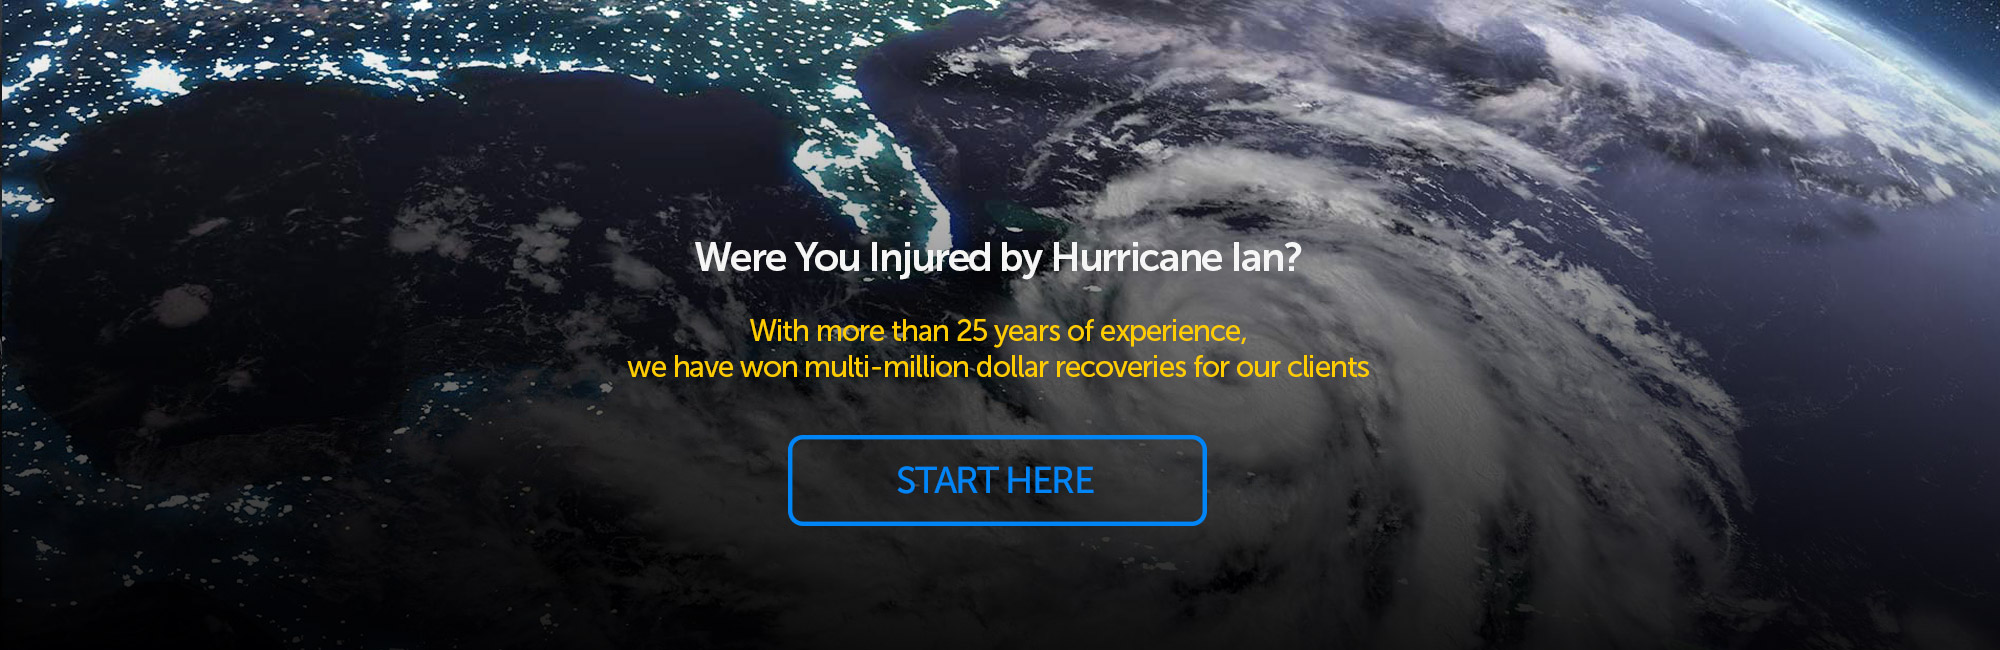 Were You Injured by Hurricane Ian?